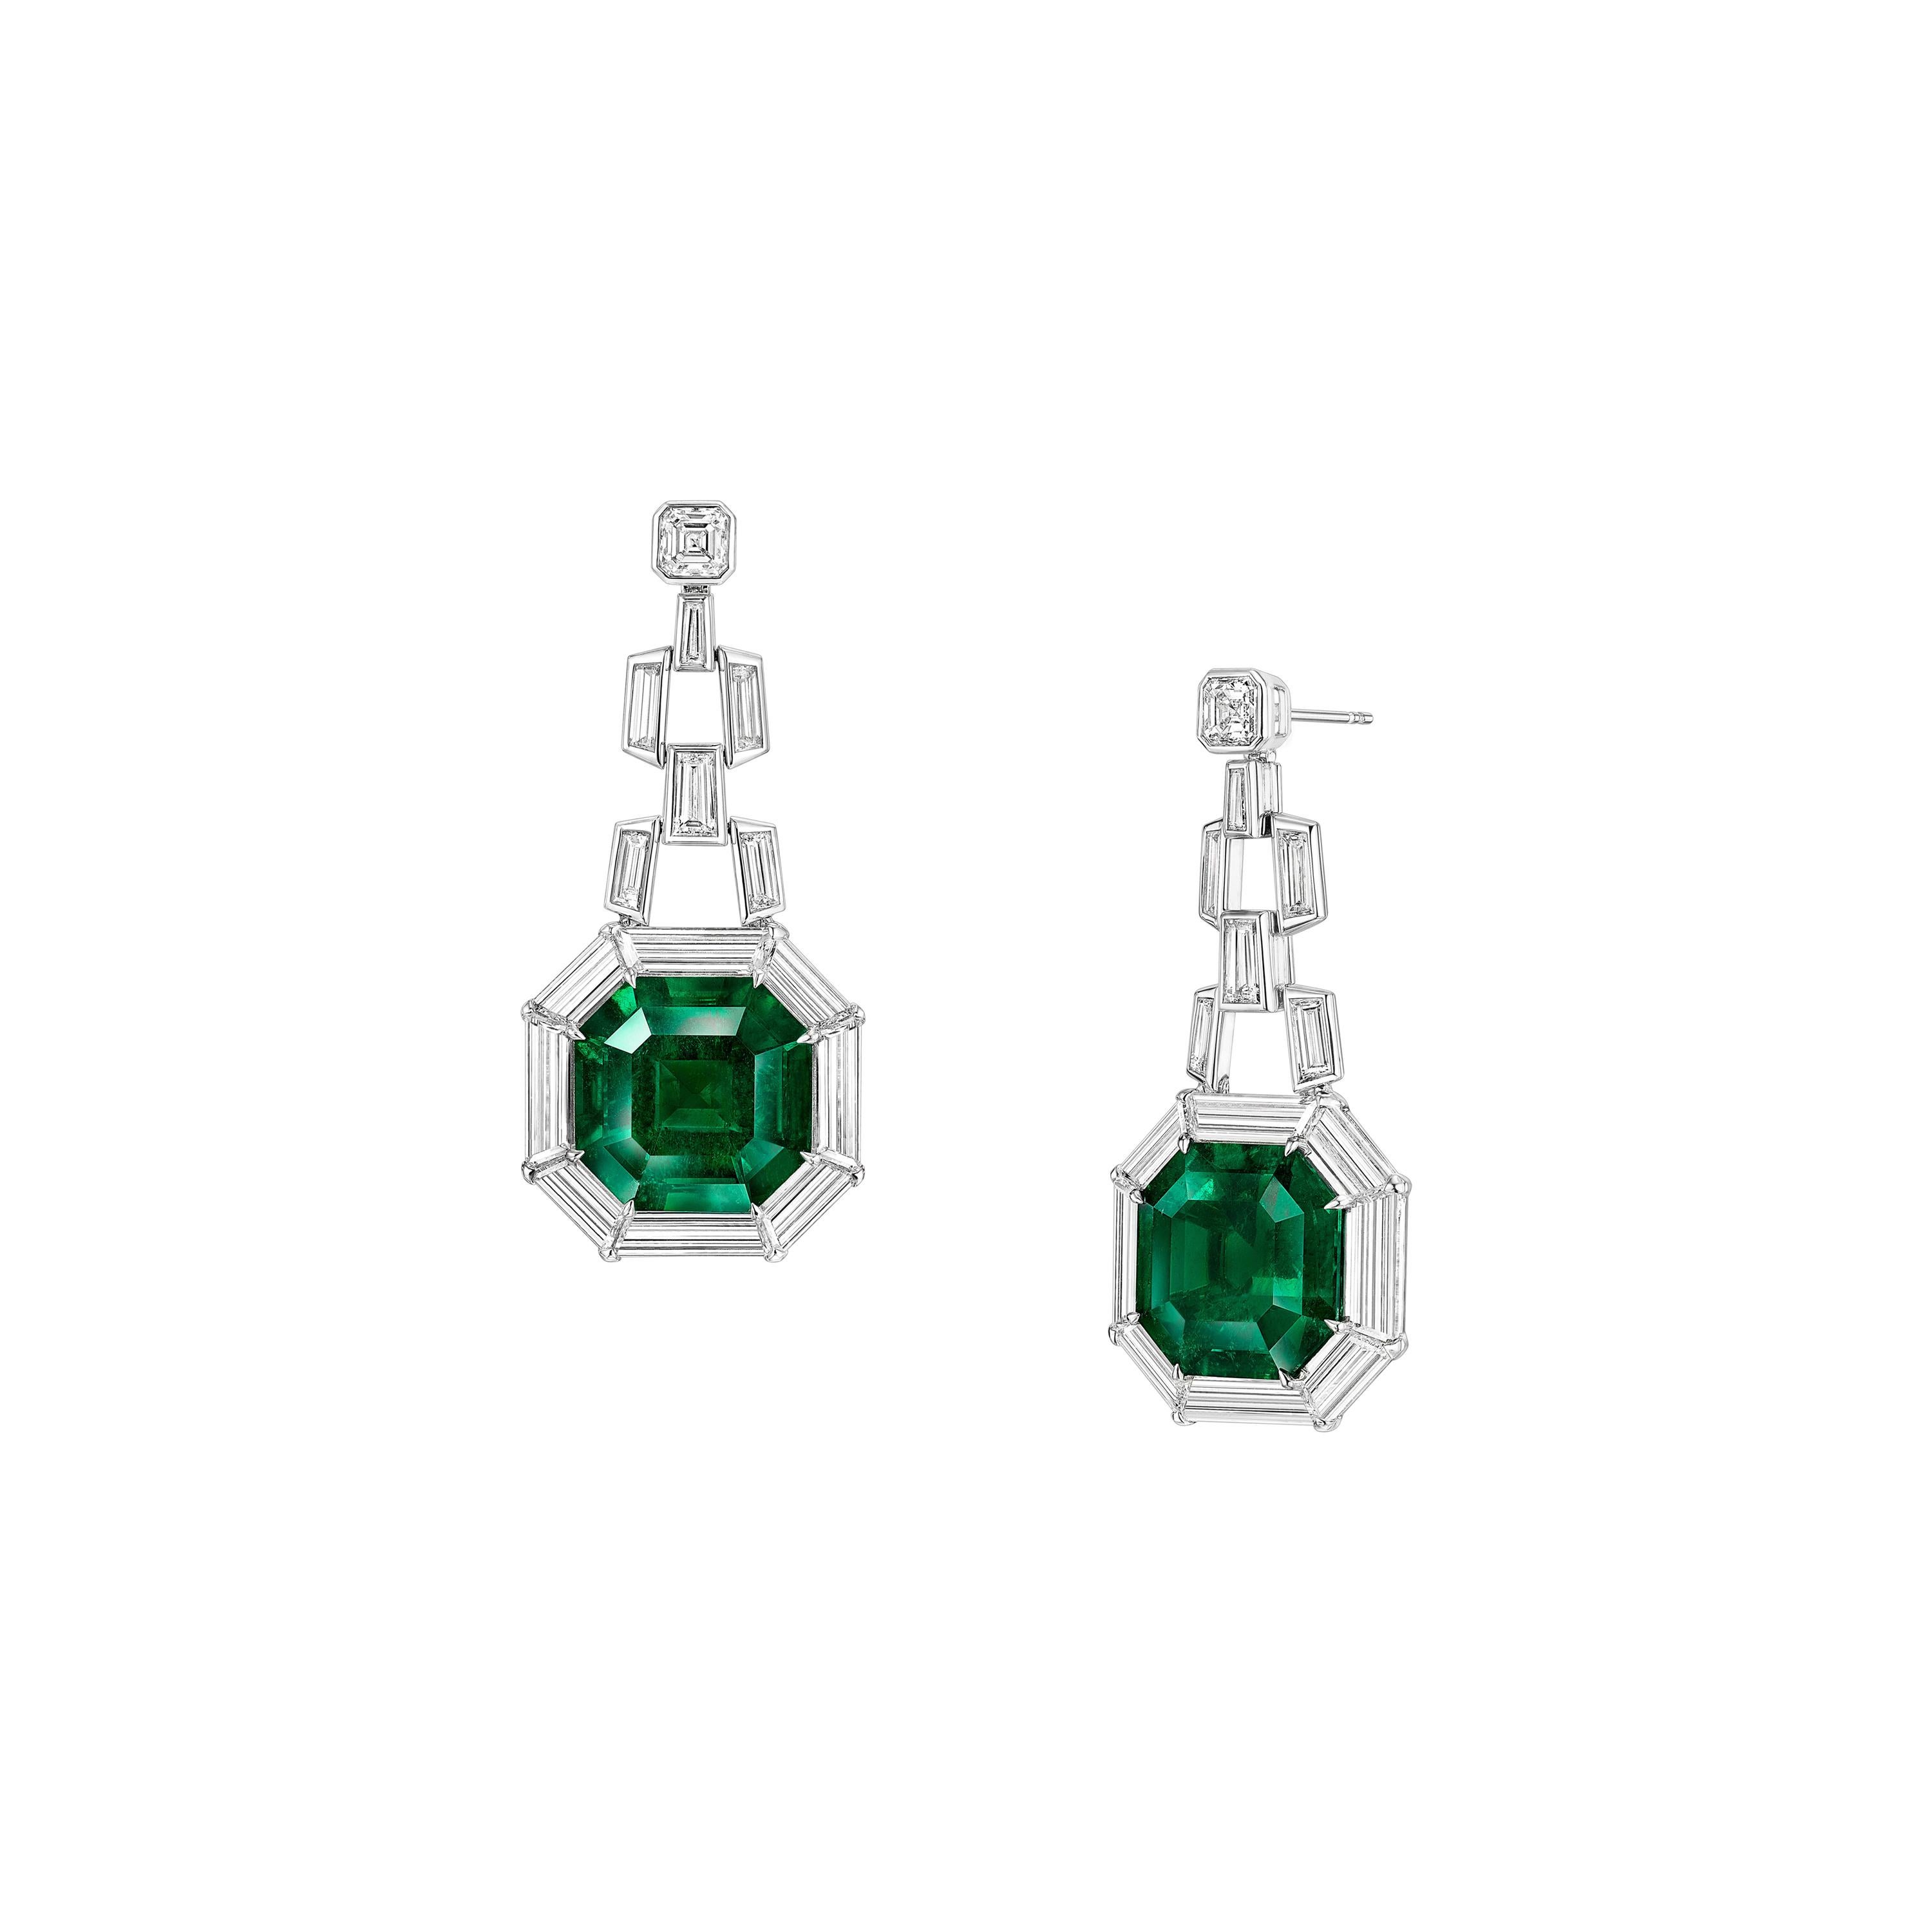 Gubelin Certified 35.61 Carat Colombian Emerald Art Deco Style Earrings 18k Gold